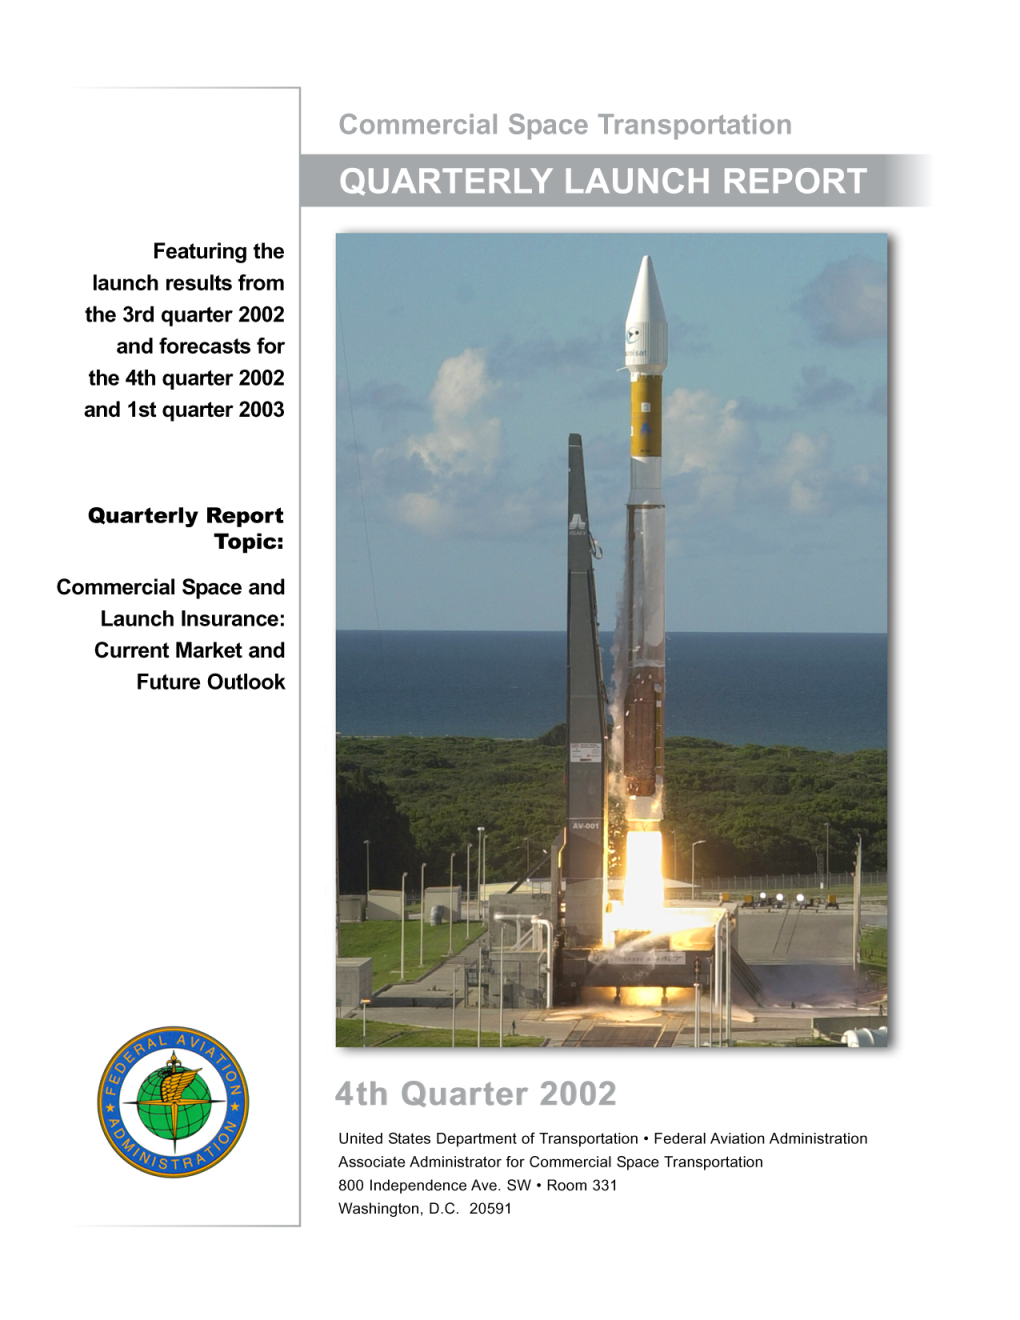 Fourth Quarter 2002 Quarterly Launch Report 1